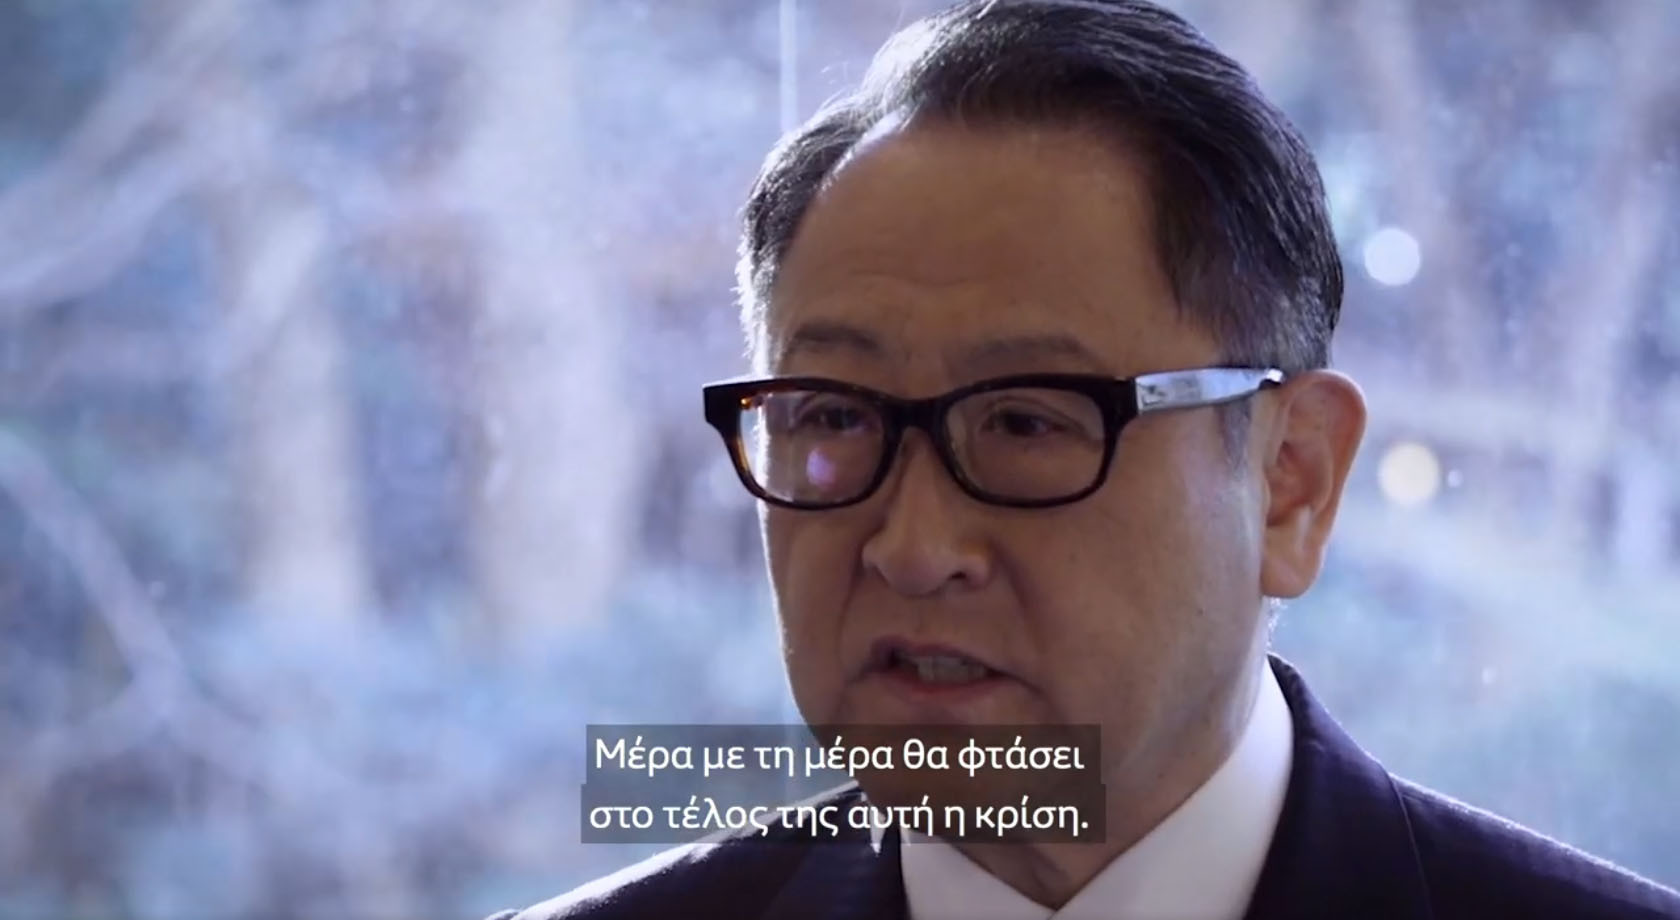 Ο πρόεδρος της Toyota εμψυχώνει τους συνεργάτες του (βίντεο)